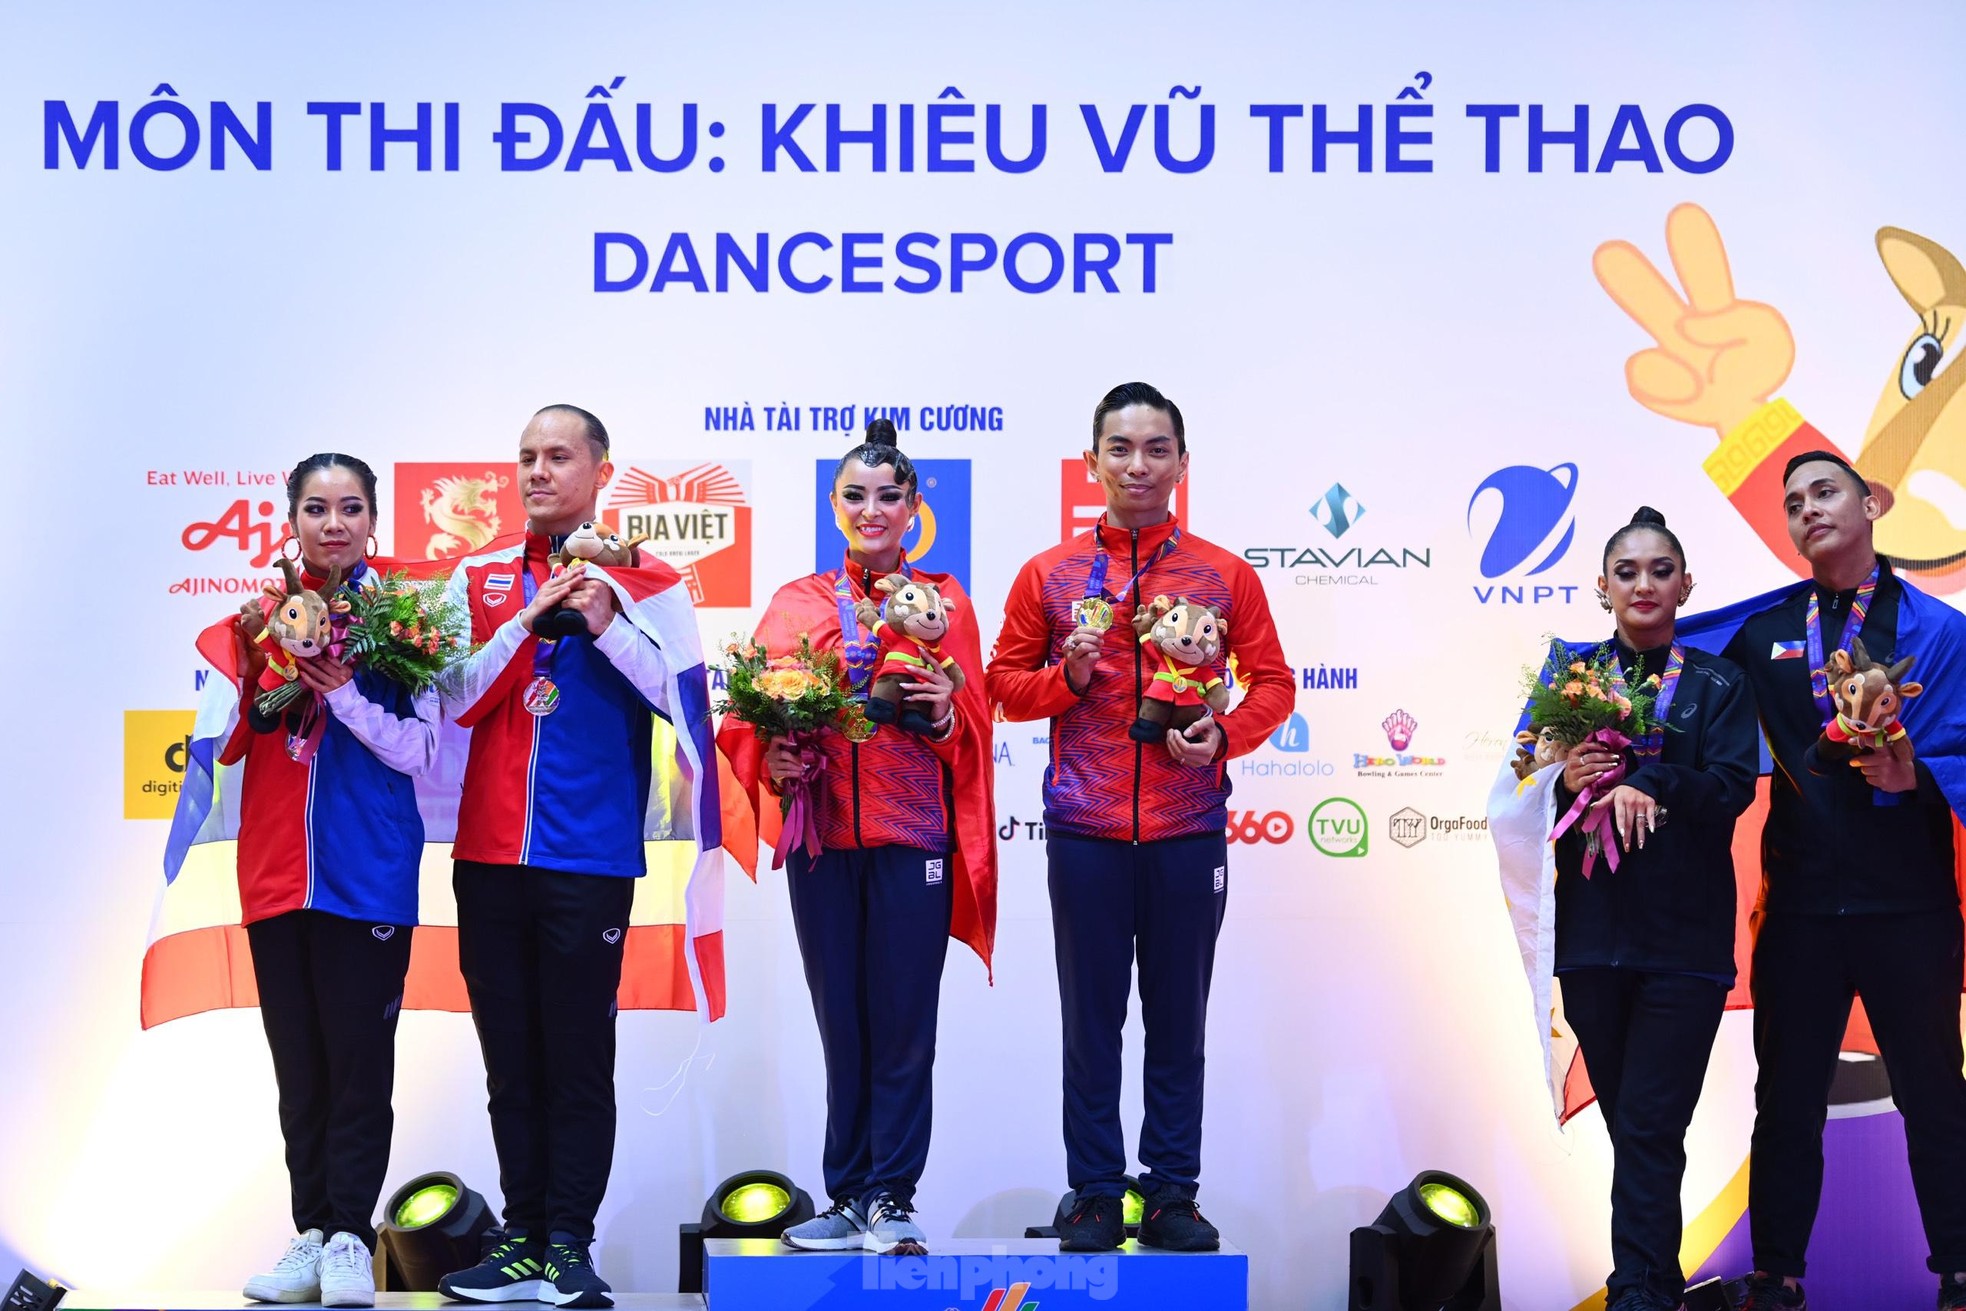  Ngắm vũ điệu mê hồn giúp Dancesport Việt Nam giành 5 HCV SEA Games 31 ảnh 13